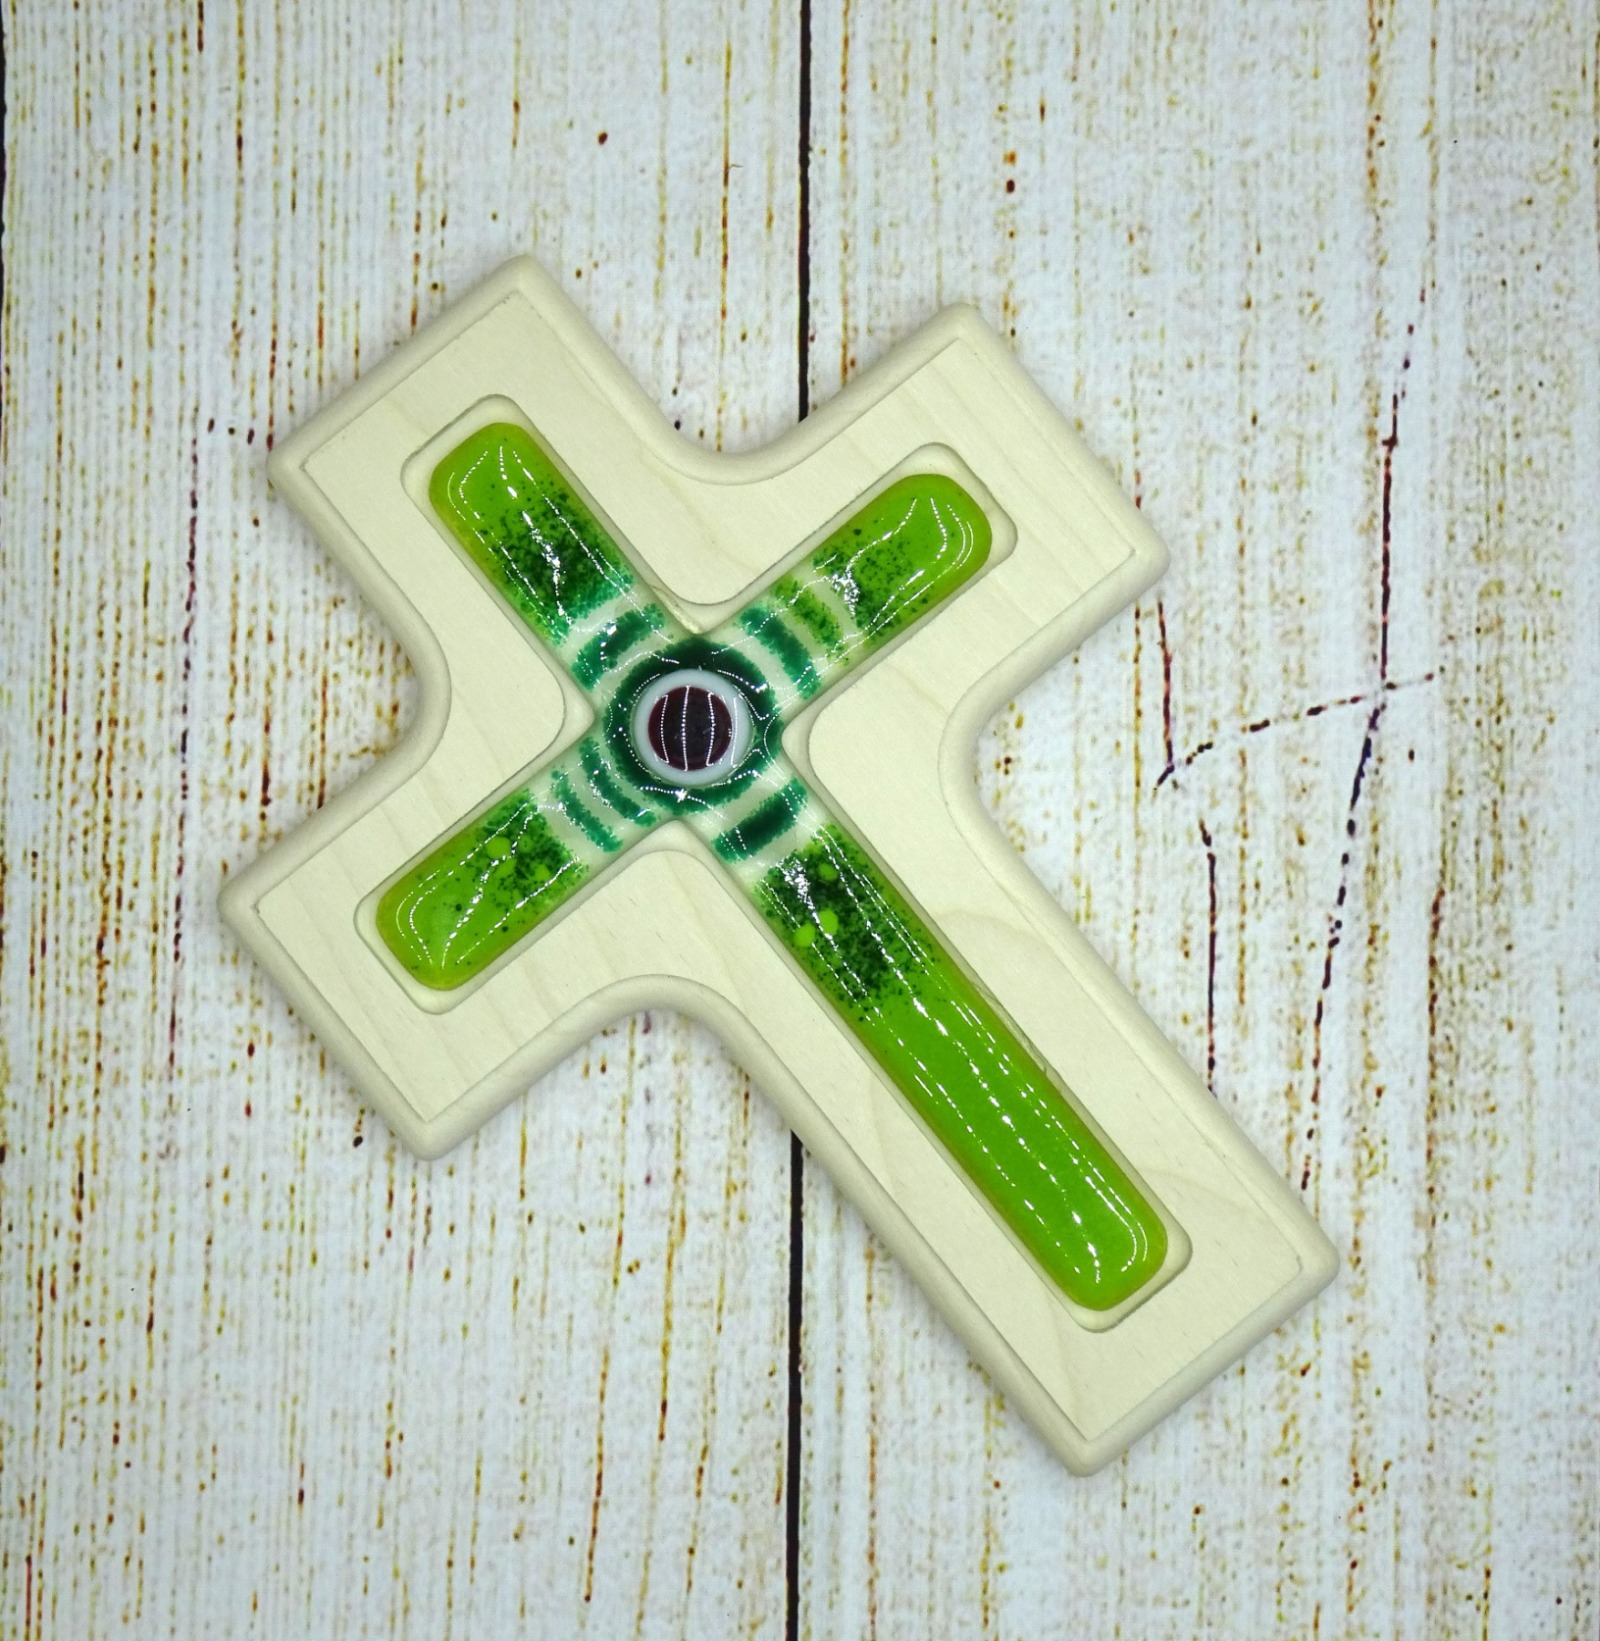 Holzkreuz mit Fusingglas in grün, Kreuz aus Ahorn 2